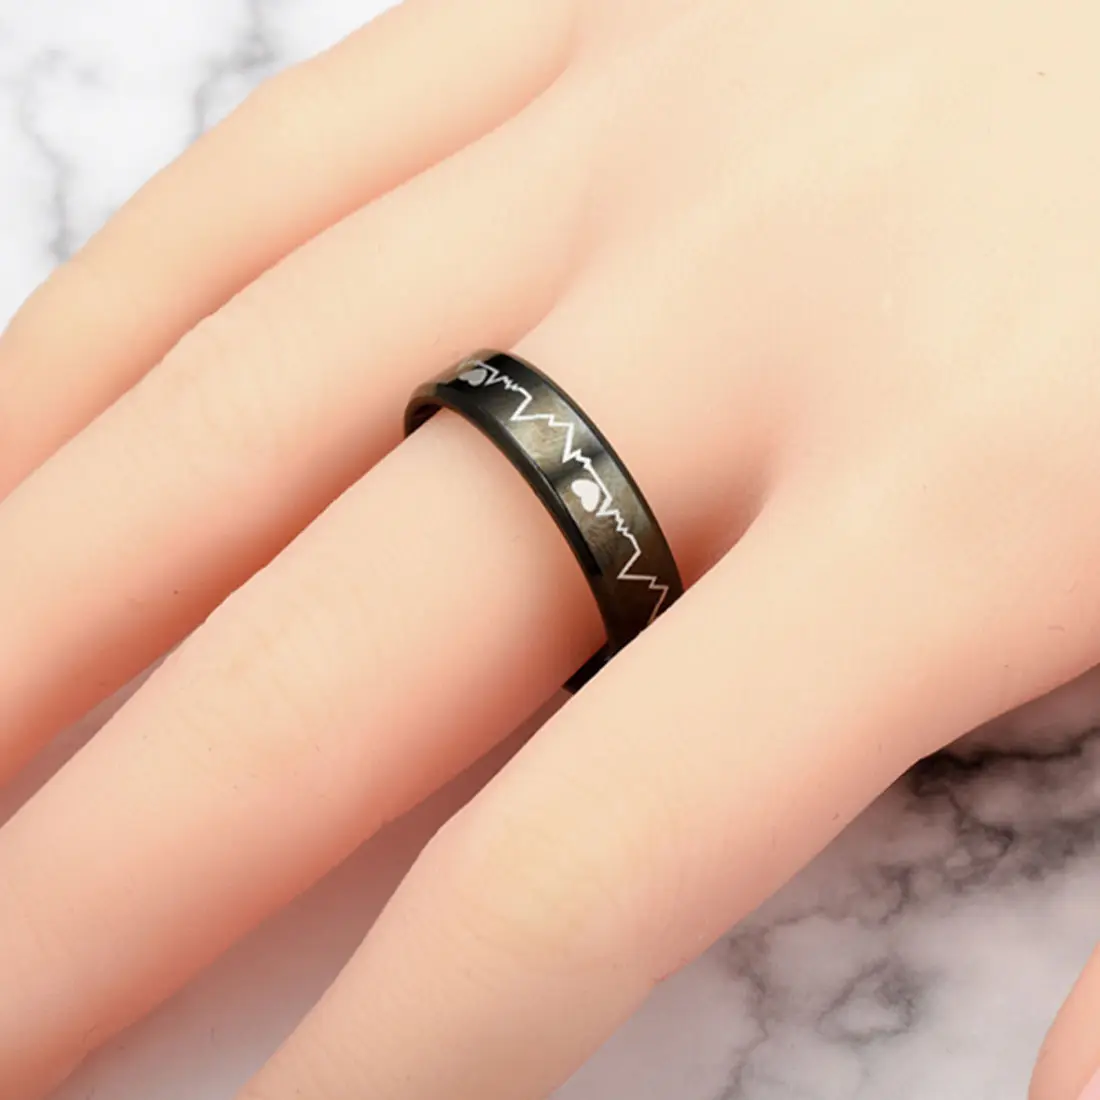 Tungsten nhẫn khắc 8 mét tungsten carbide Đen nhịp tim tungsten carbide Wedding ban nhạc đồ trang sức cho nam giới Vòng